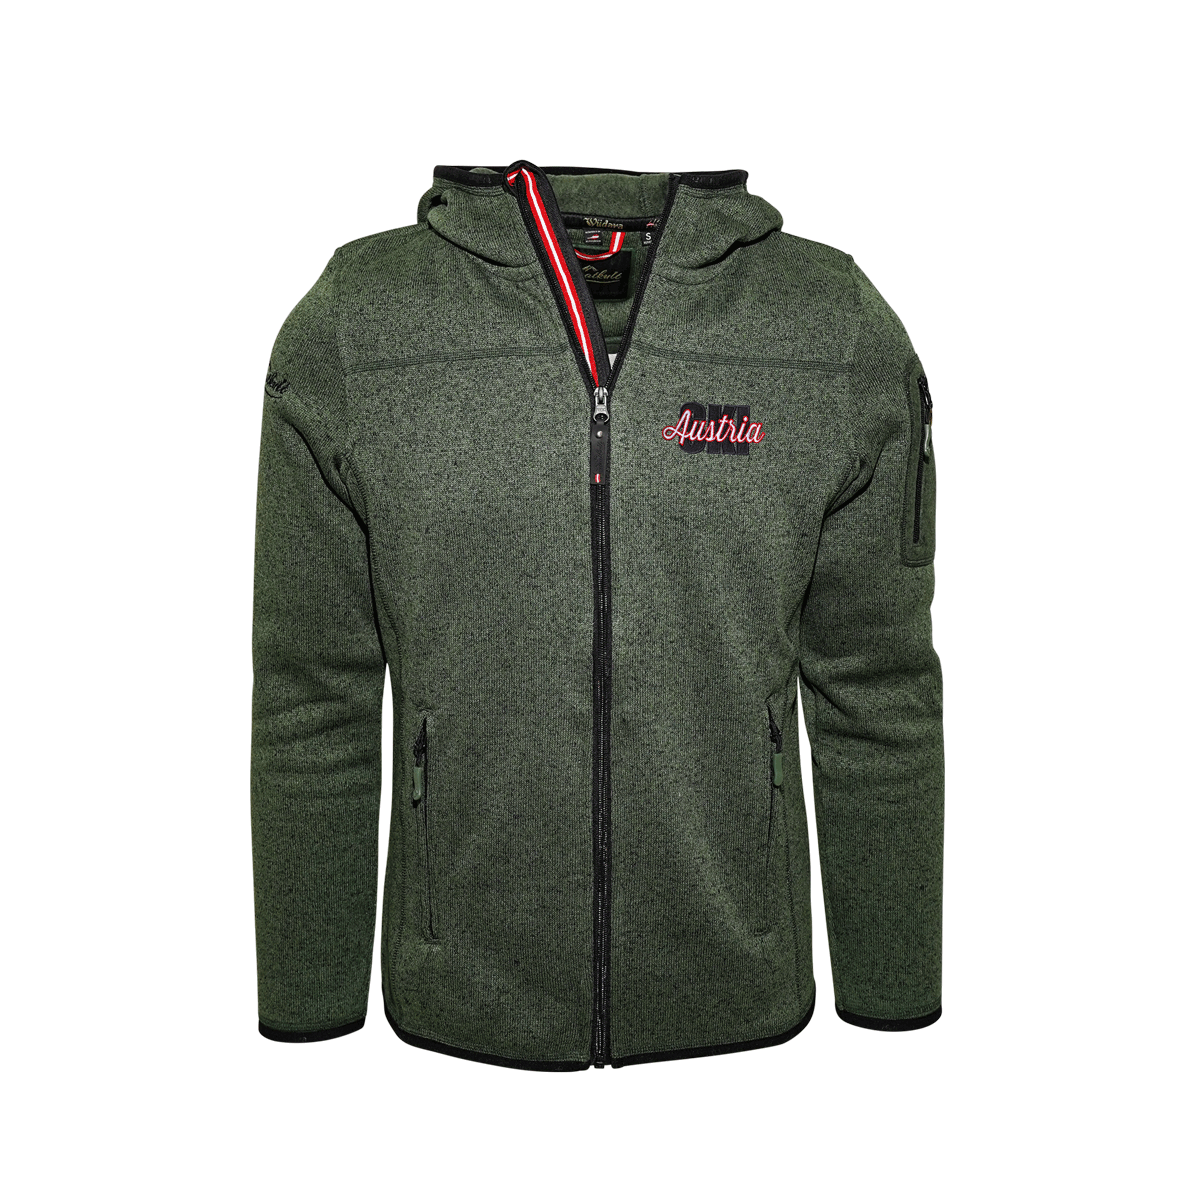 Strickfleece Jacke Herren grün Ski Motiv #Farbe_Dunkelgrün